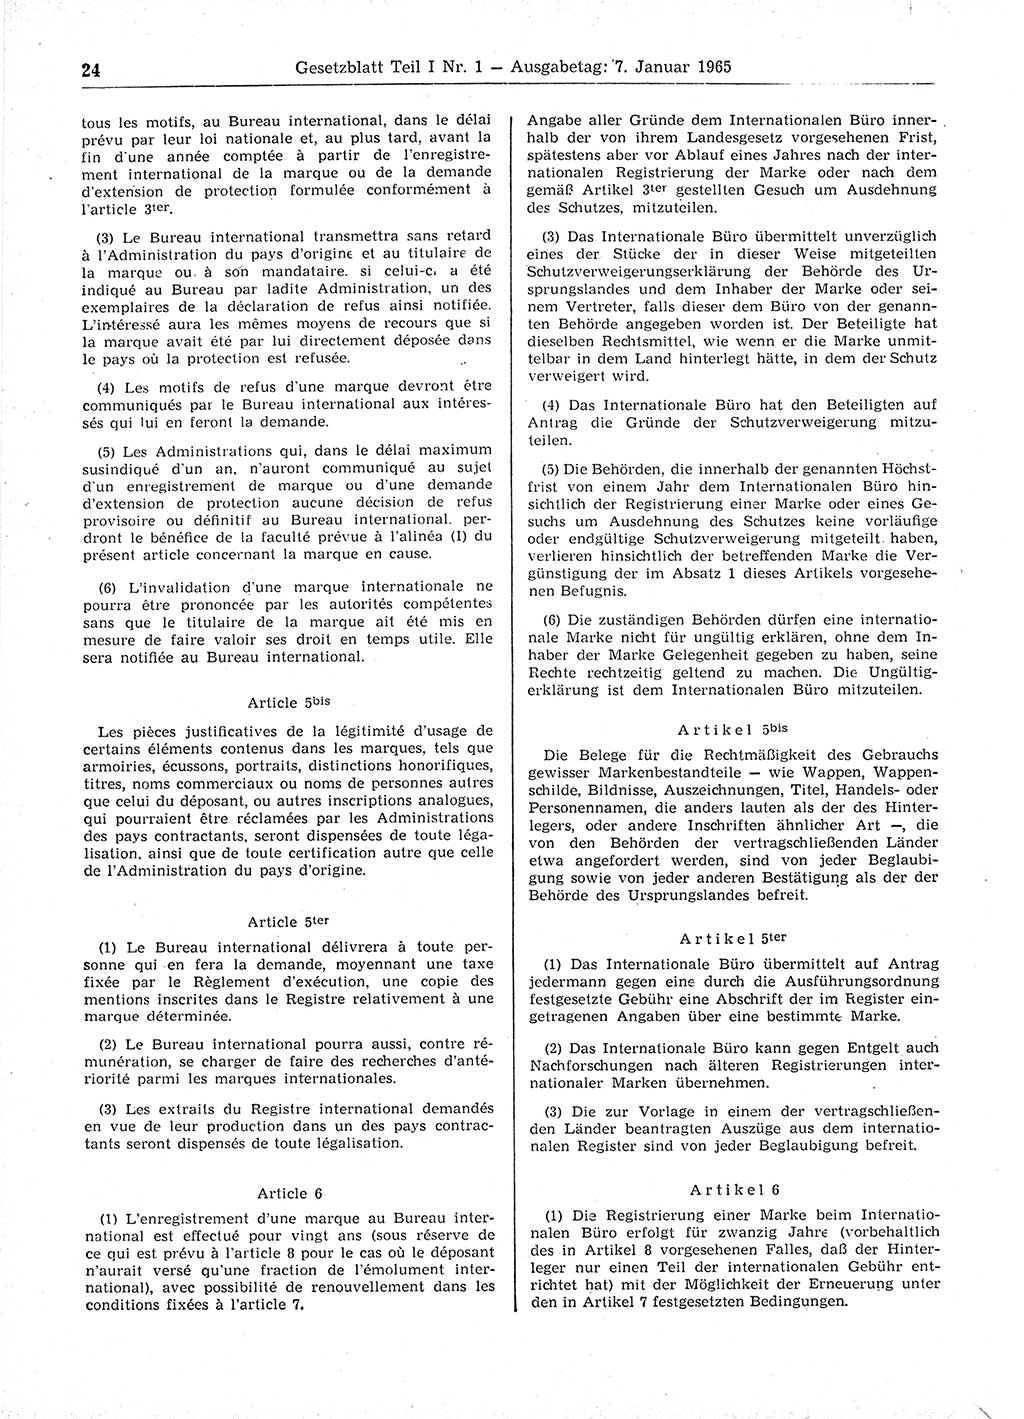 Gesetzblatt (GBl.) der Deutschen Demokratischen Republik (DDR) Teil Ⅰ 1965, Seite 24 (GBl. DDR Ⅰ 1965, S. 24)